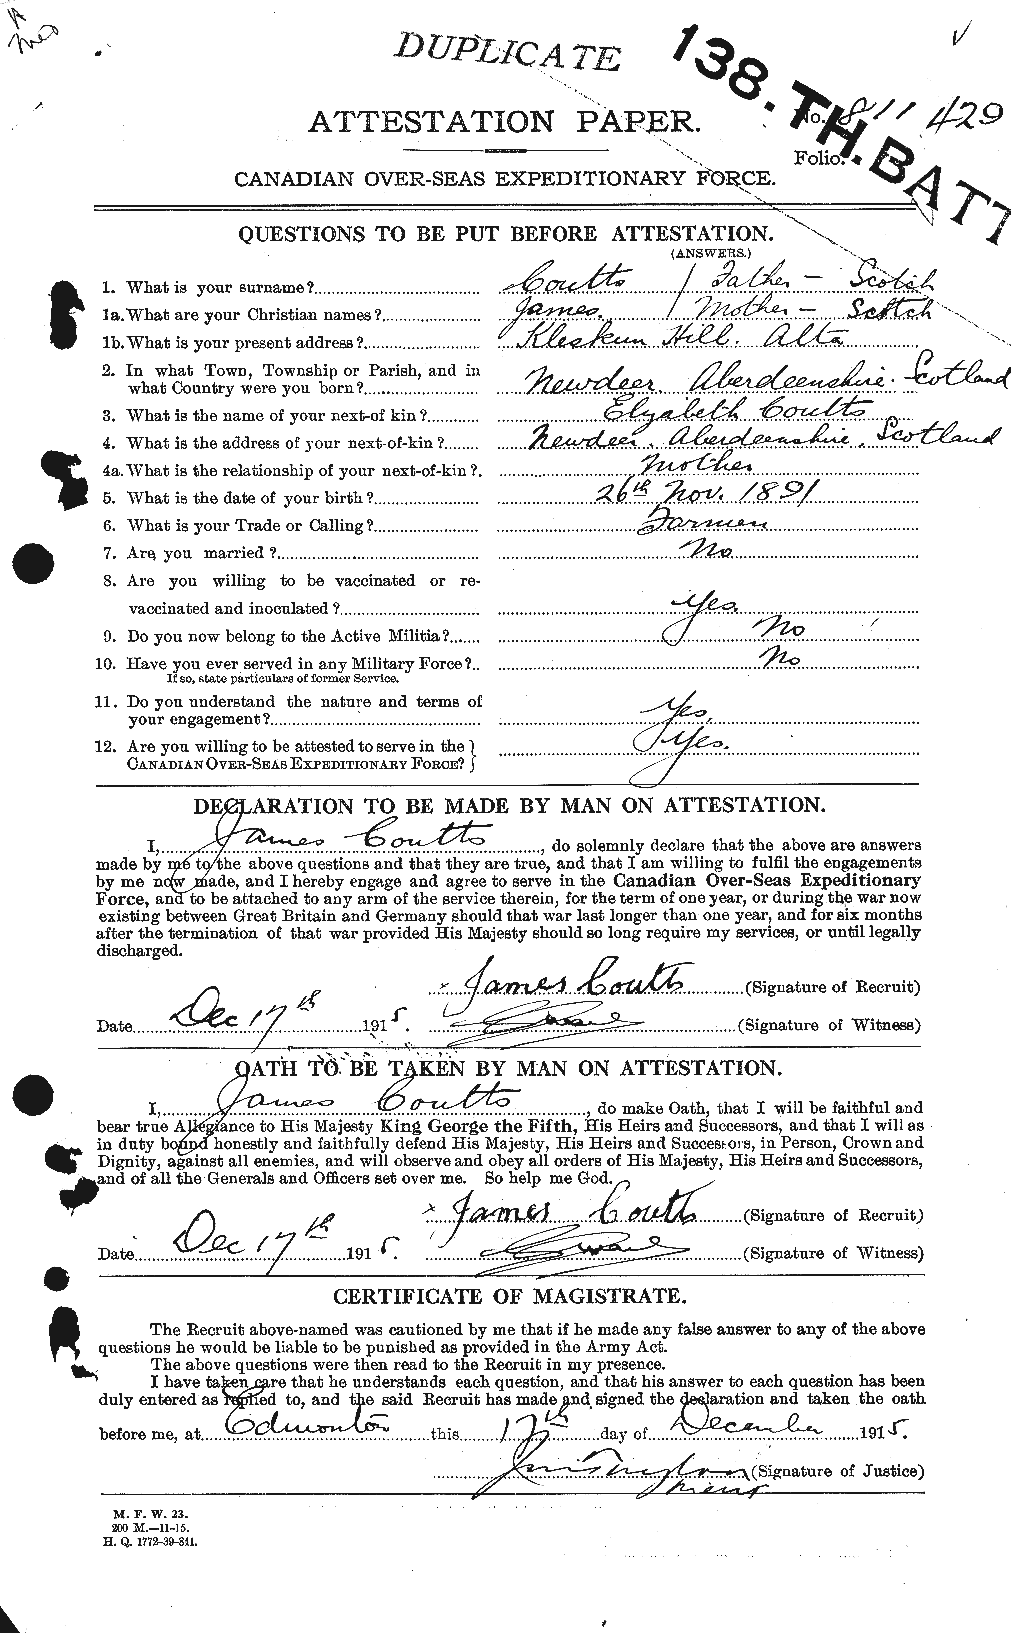 Dossiers du Personnel de la Première Guerre mondiale - CEC 058010a